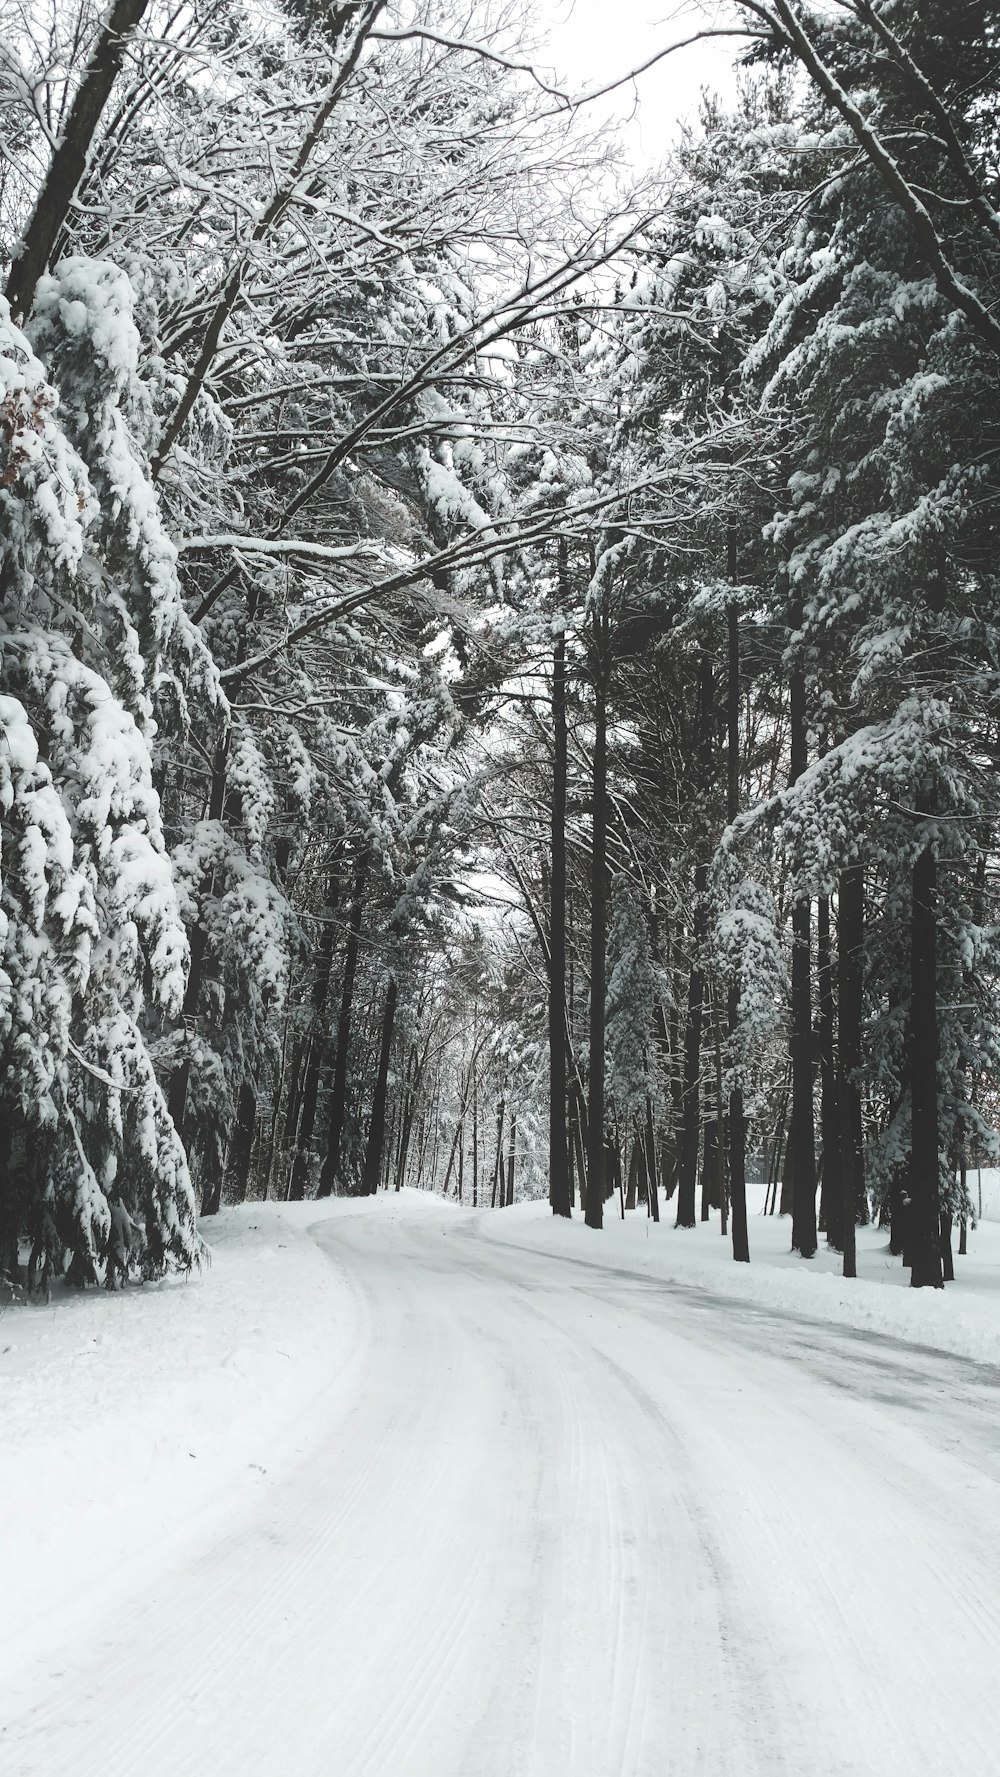 Straße im Winter von Bäumen umgeben